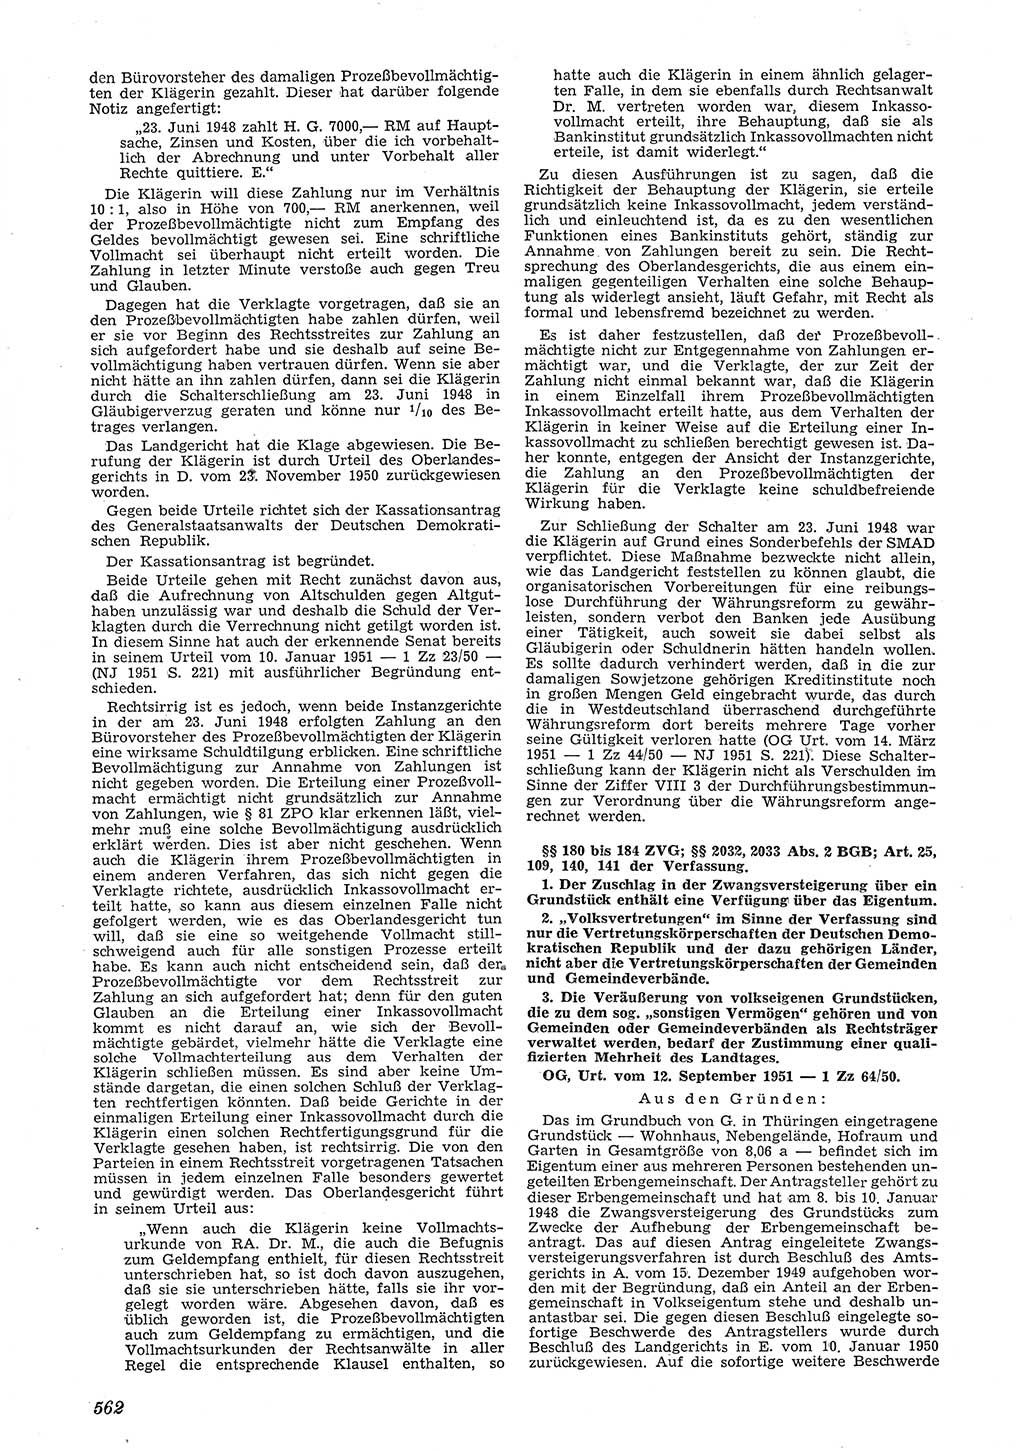 Neue Justiz (NJ), Zeitschrift für Recht und Rechtswissenschaft [Deutsche Demokratische Republik (DDR)], 5. Jahrgang 1951, Seite 562 (NJ DDR 1951, S. 562)